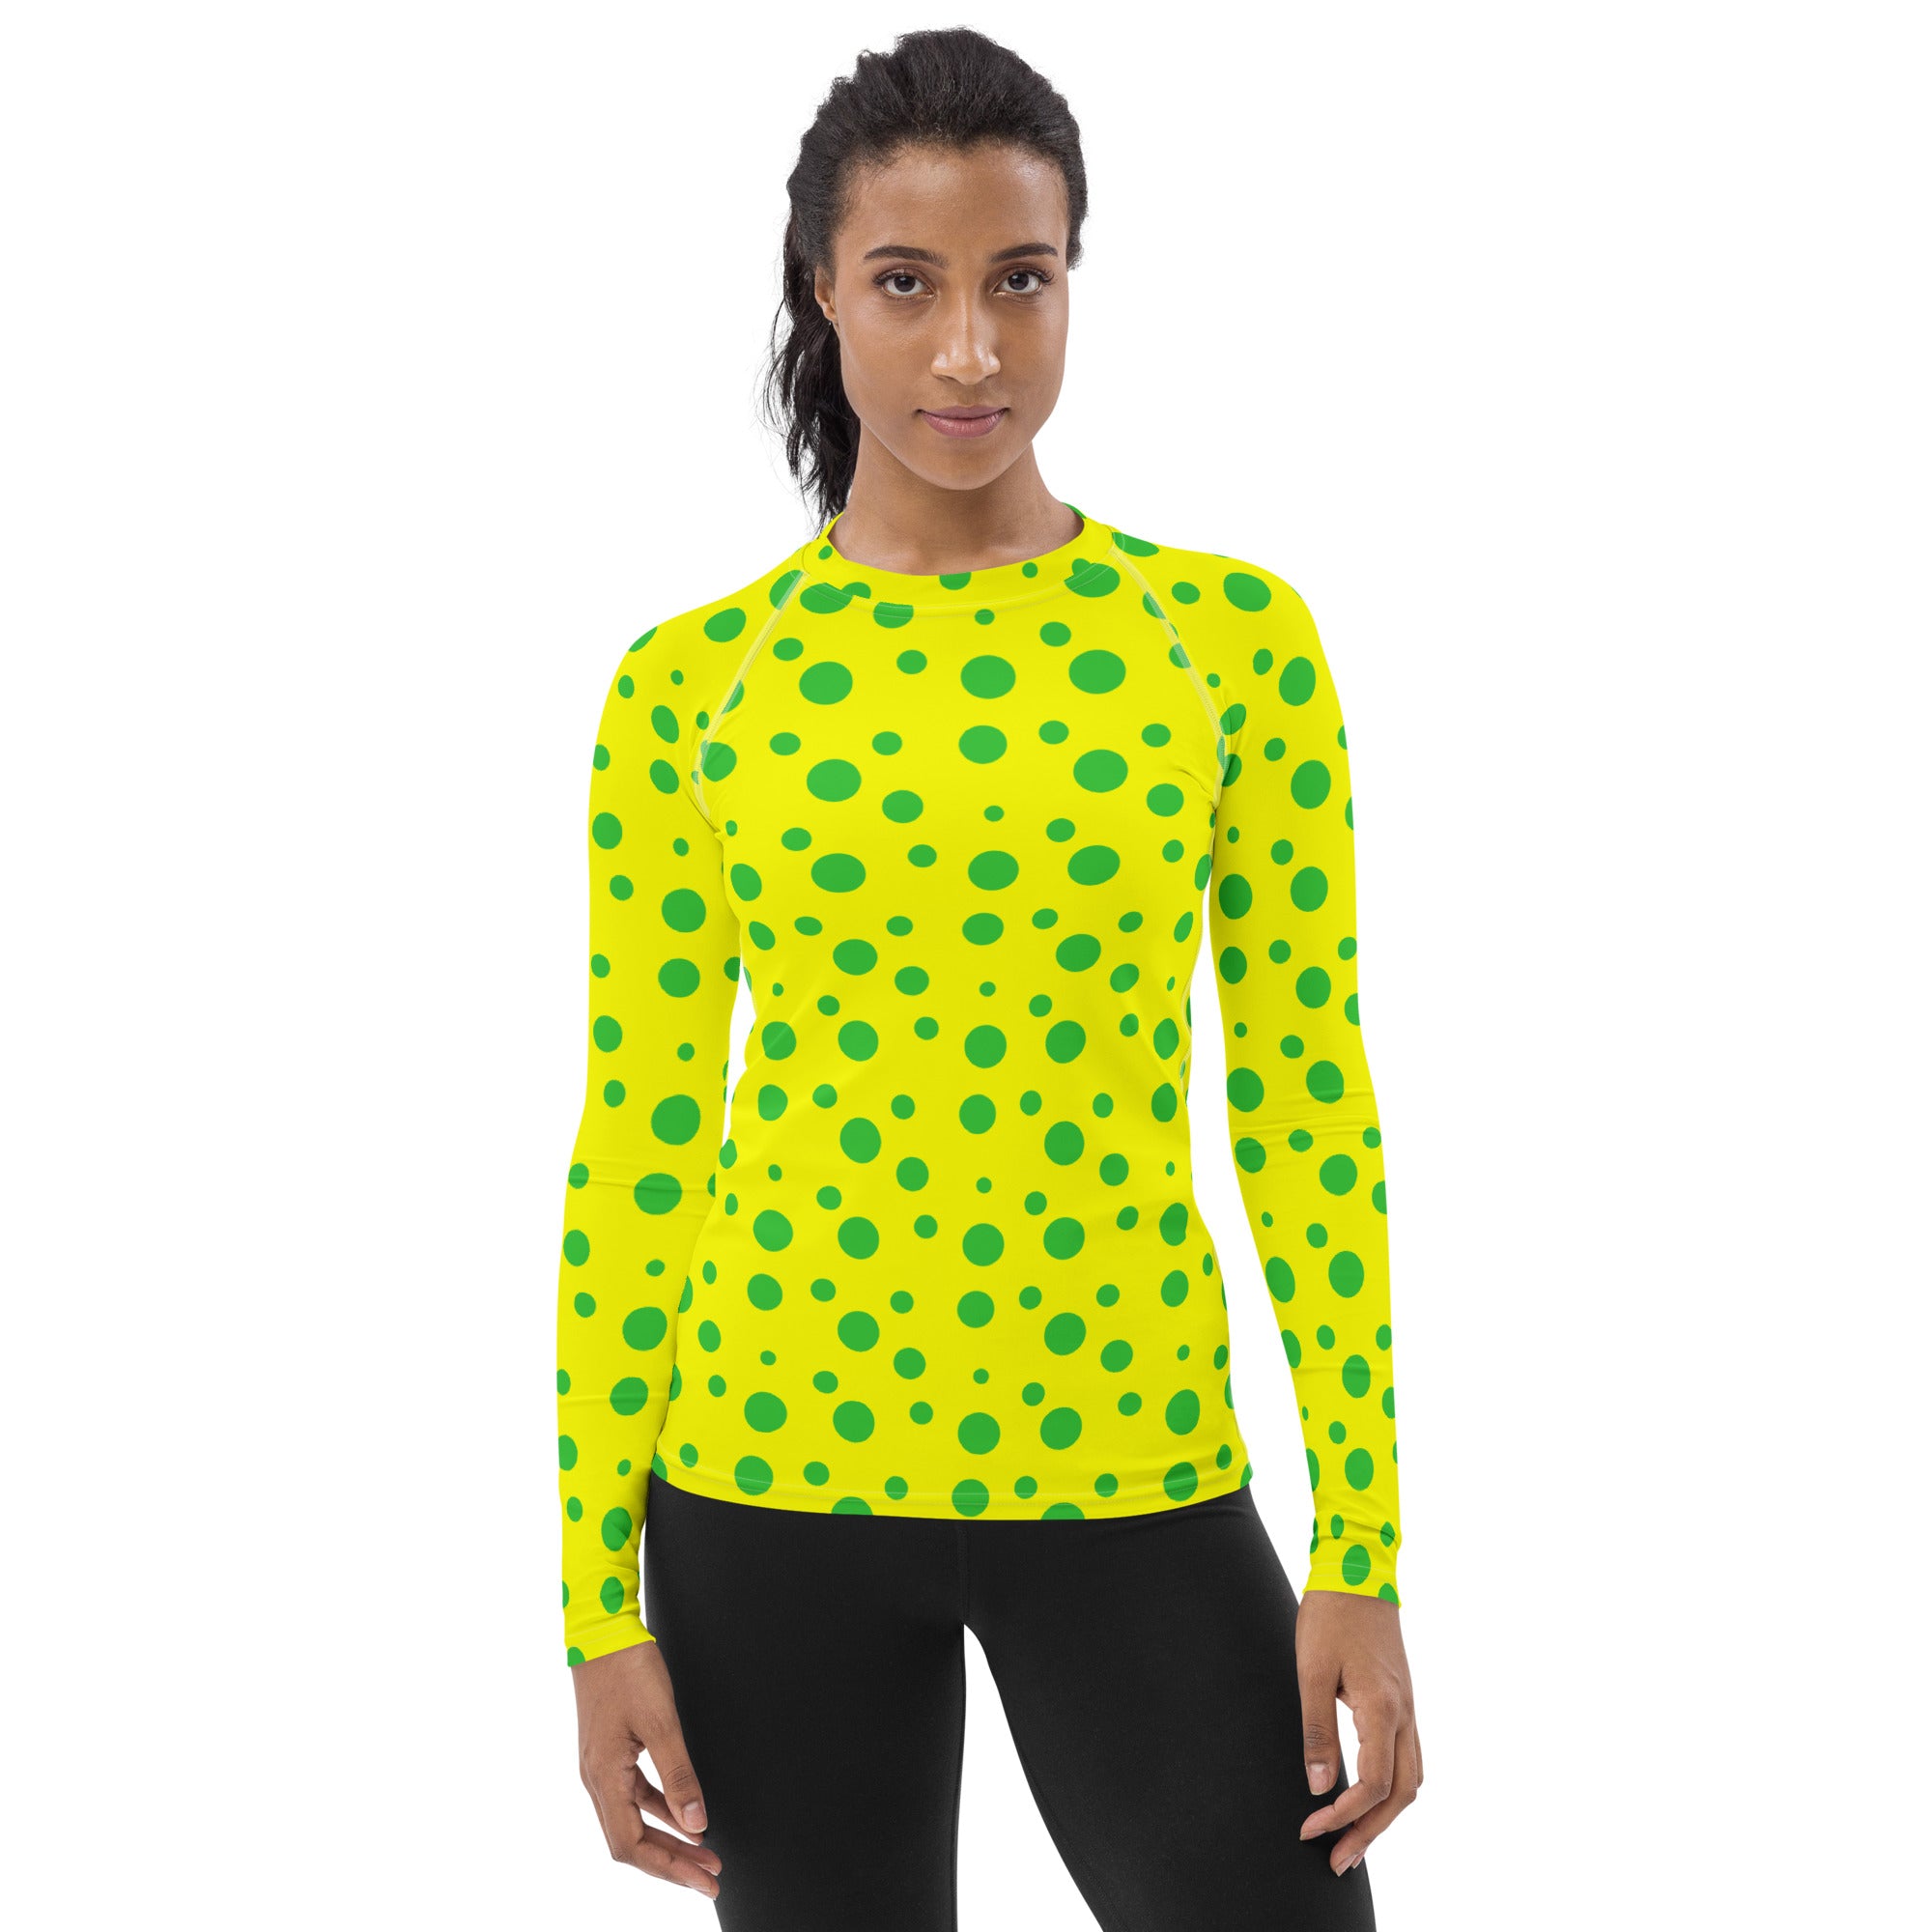 Women's Rash Guard - Yellow With Green Spots